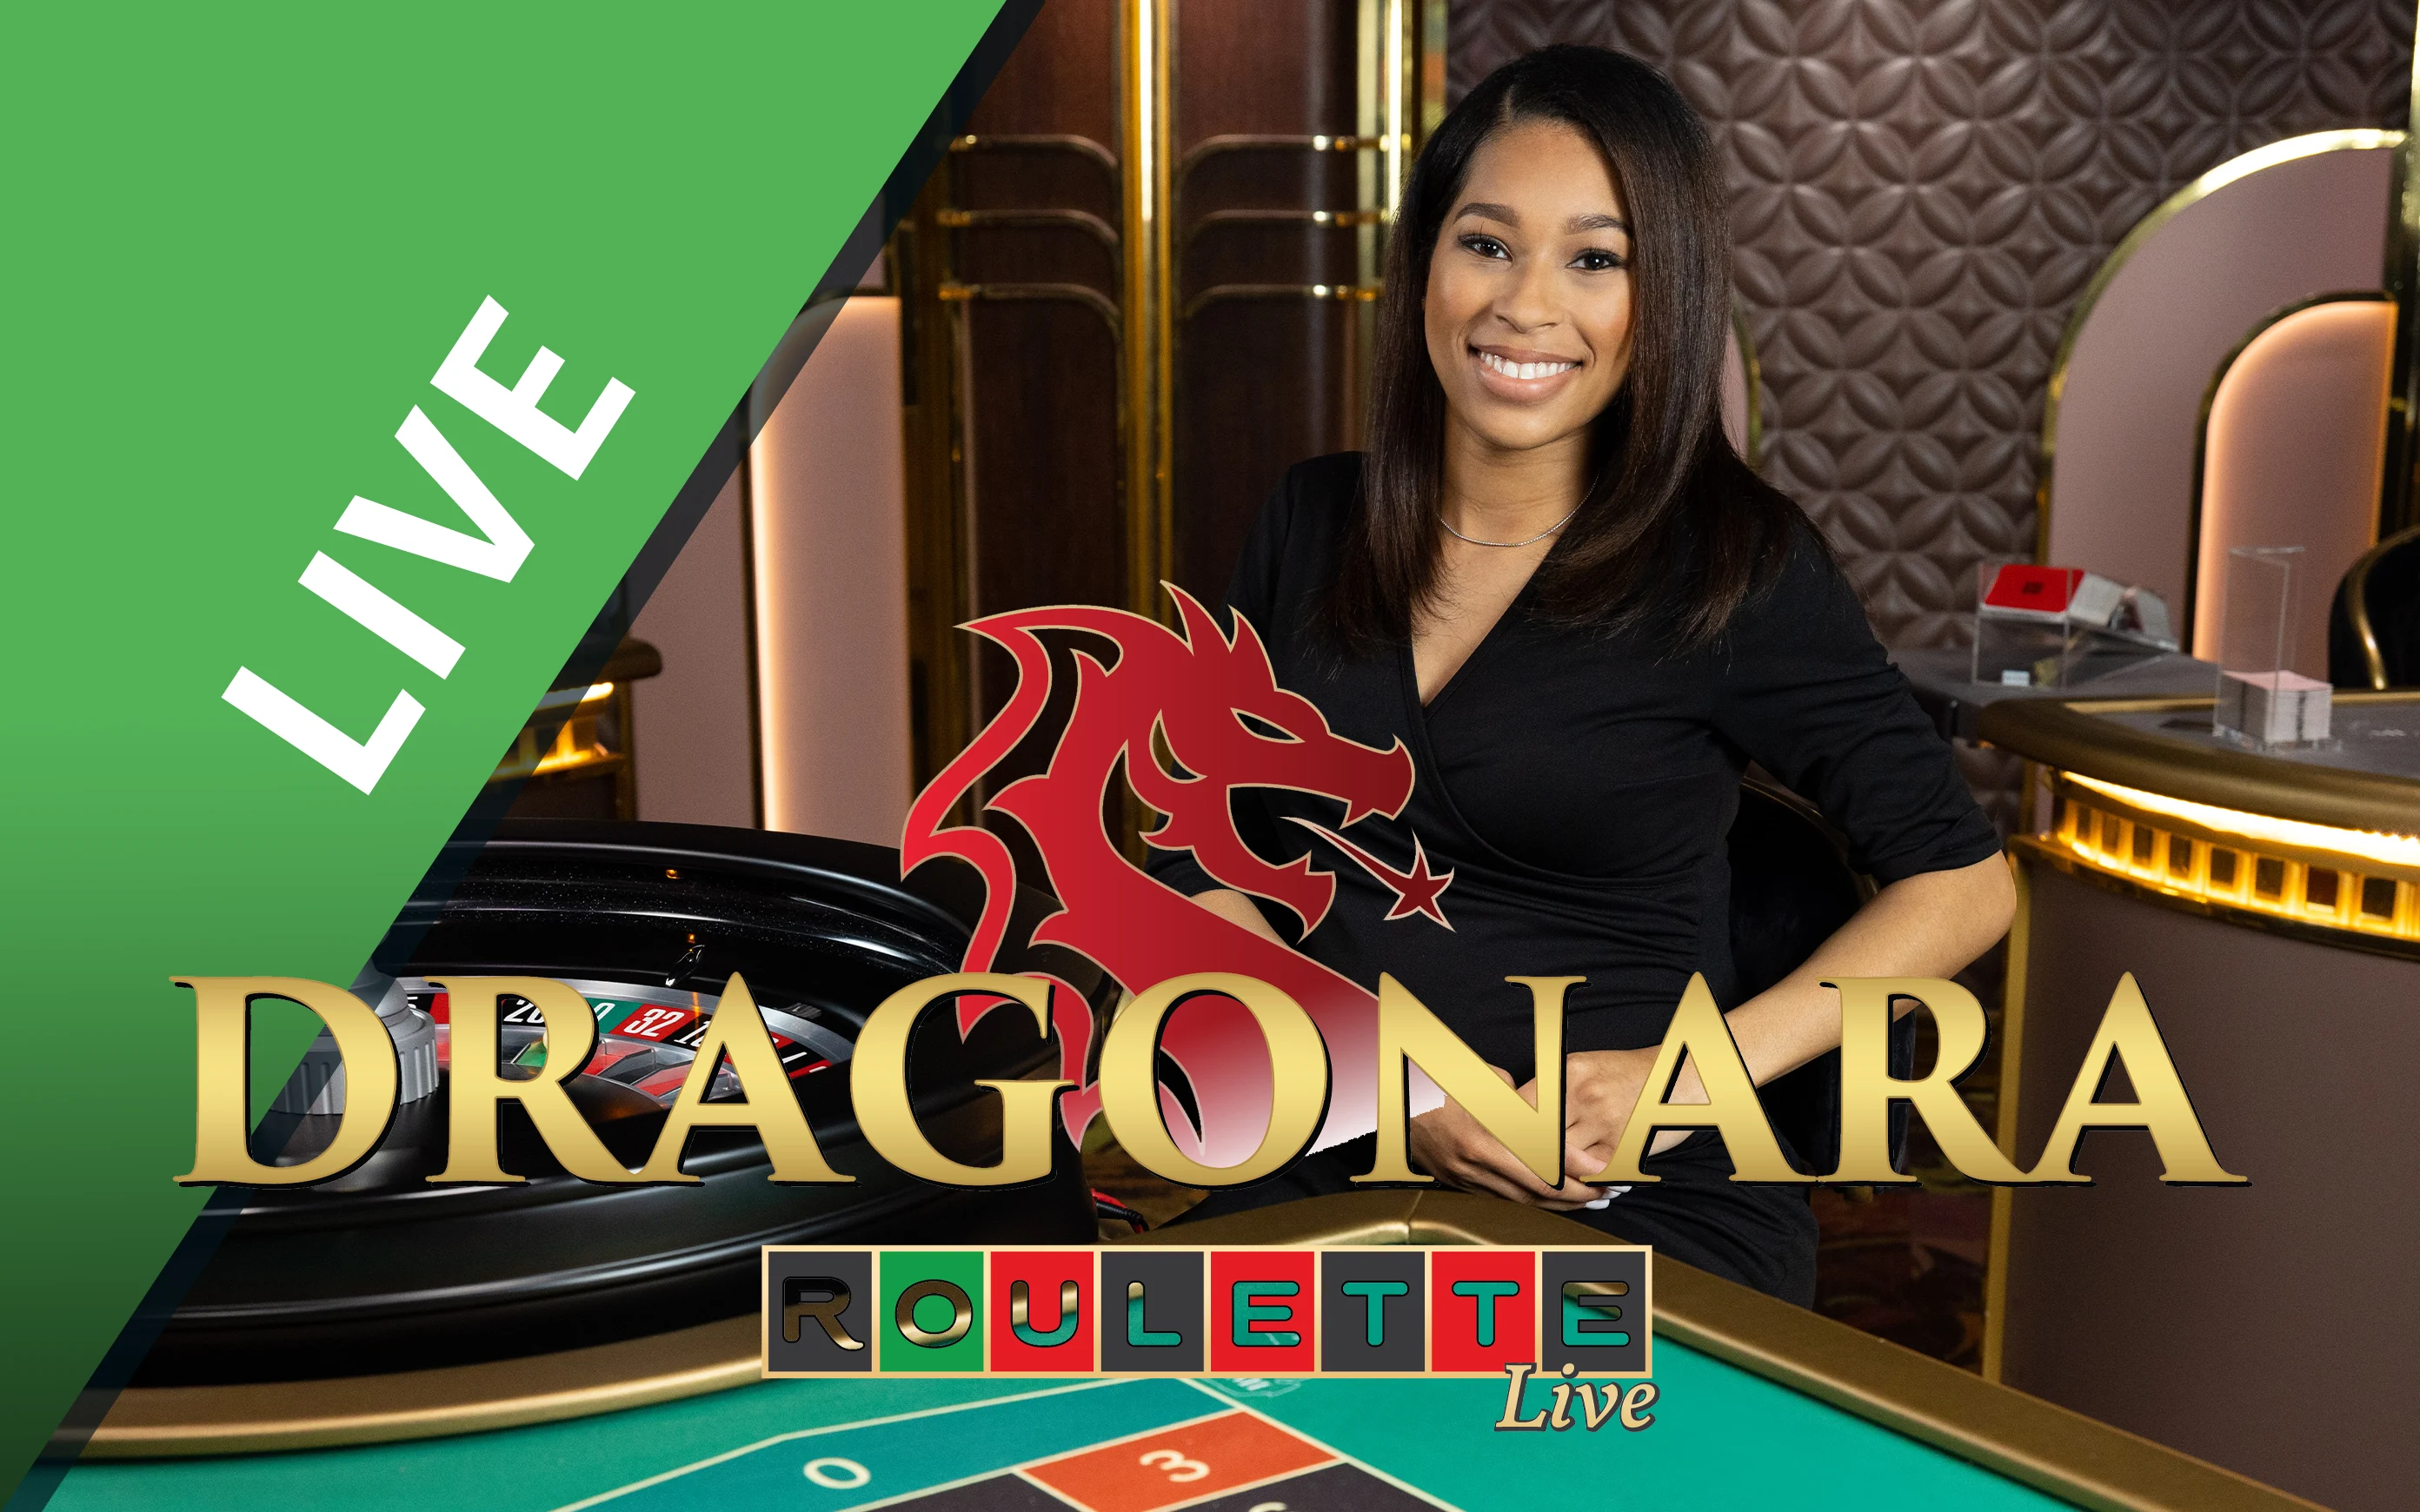 Joacă Dragonara Roulette în cazinoul online Starcasino.be